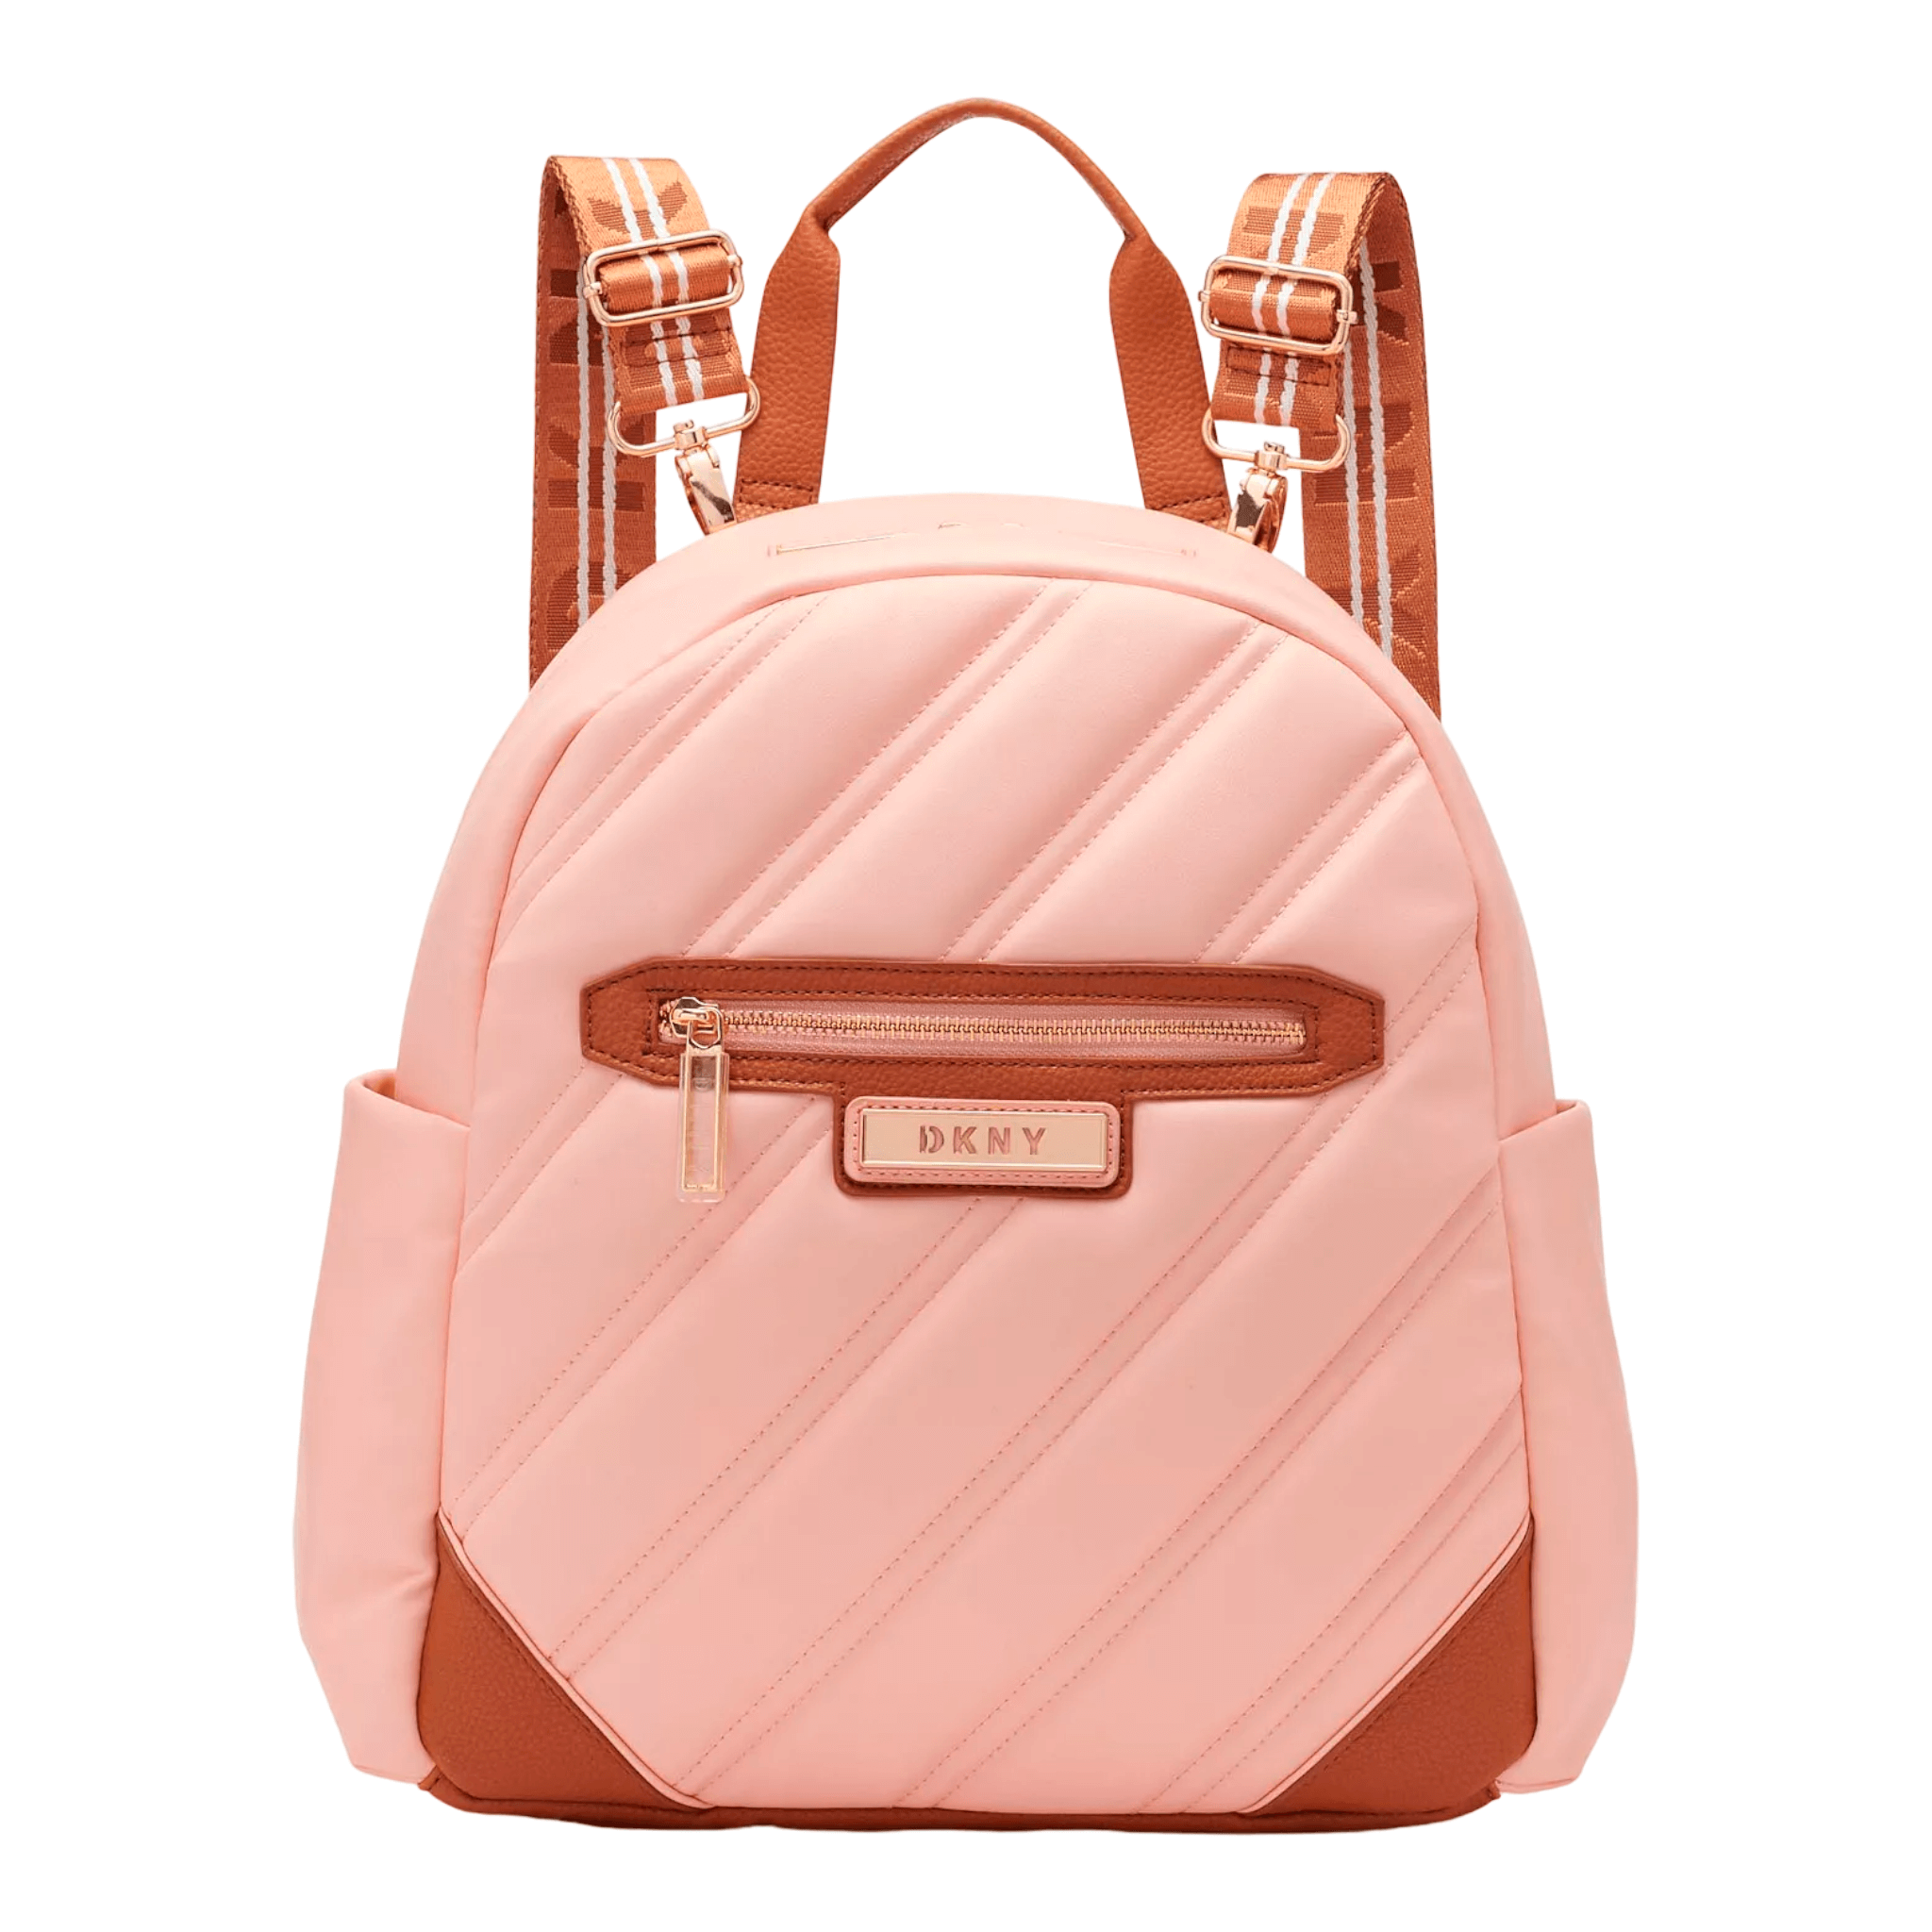 Рюкзак Dkny Bias 15 Carry-On, розовый/коричневый